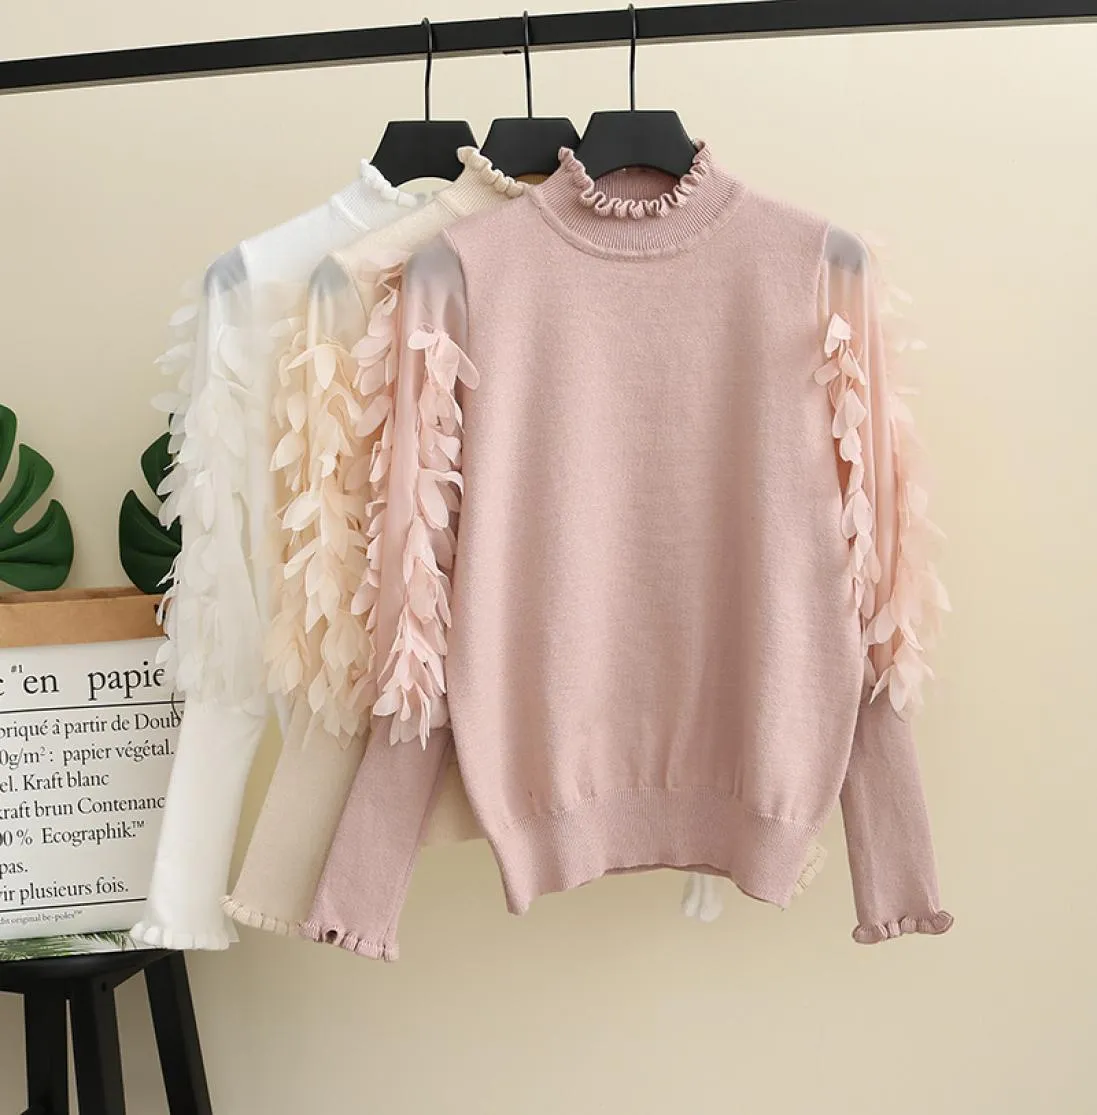 2019 Autunno nuovo maglione per ragazze grandi bambini stereo petali applique principessa pullover donna maglione lavorato a maglia splicing manica a sbuffo maglione F98692410